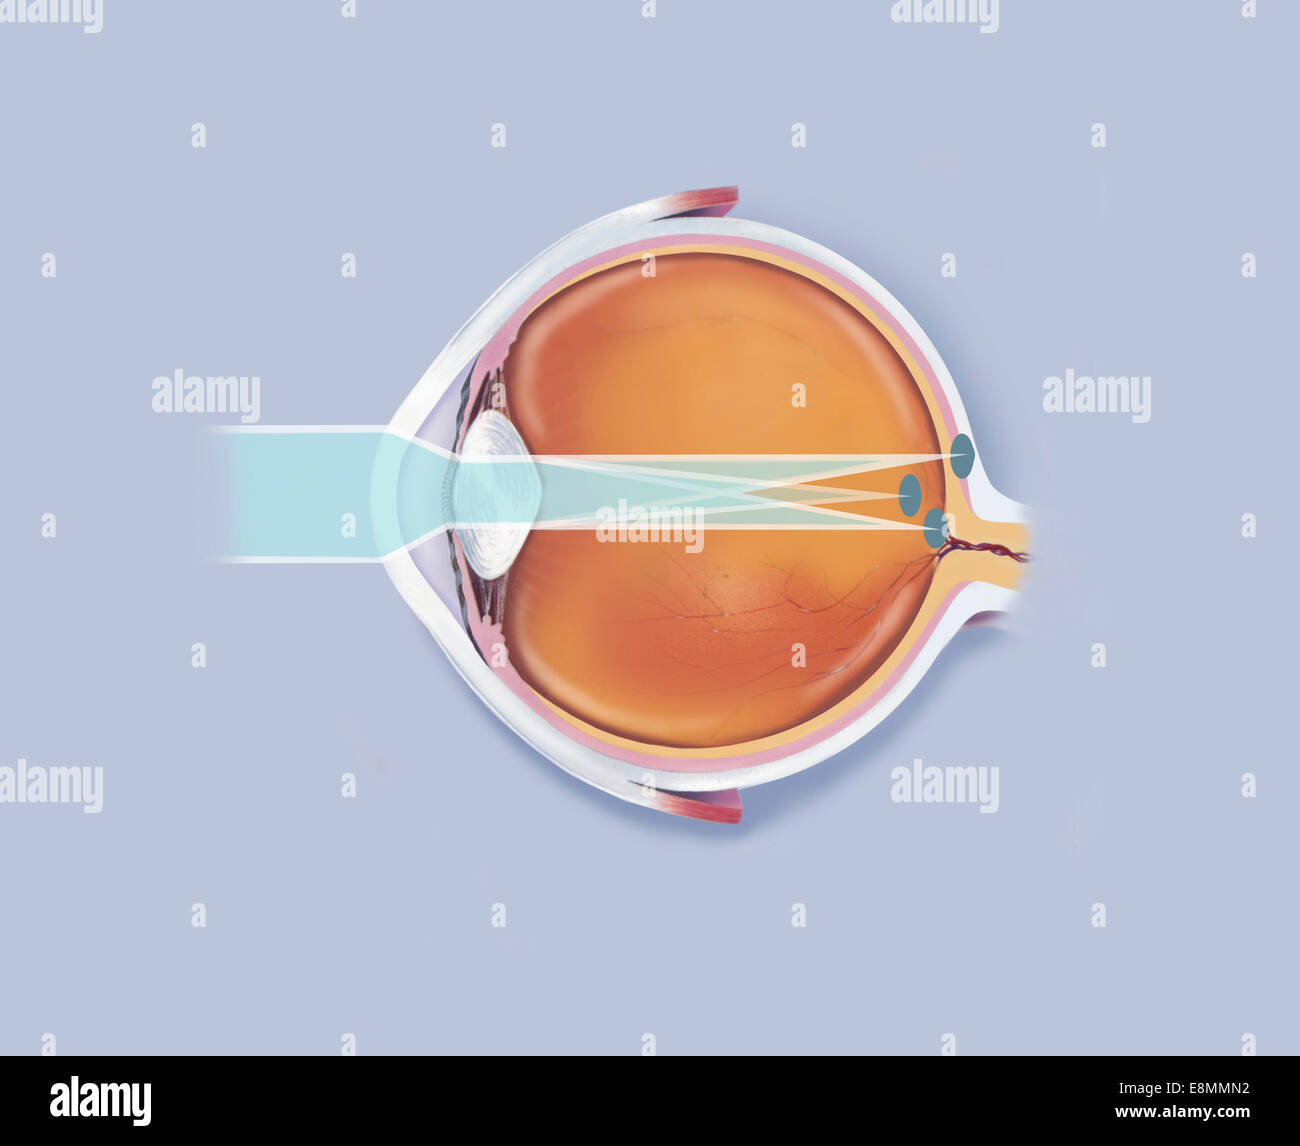 Anatomia di occhio umano che mostra i punti focali. Foto Stock